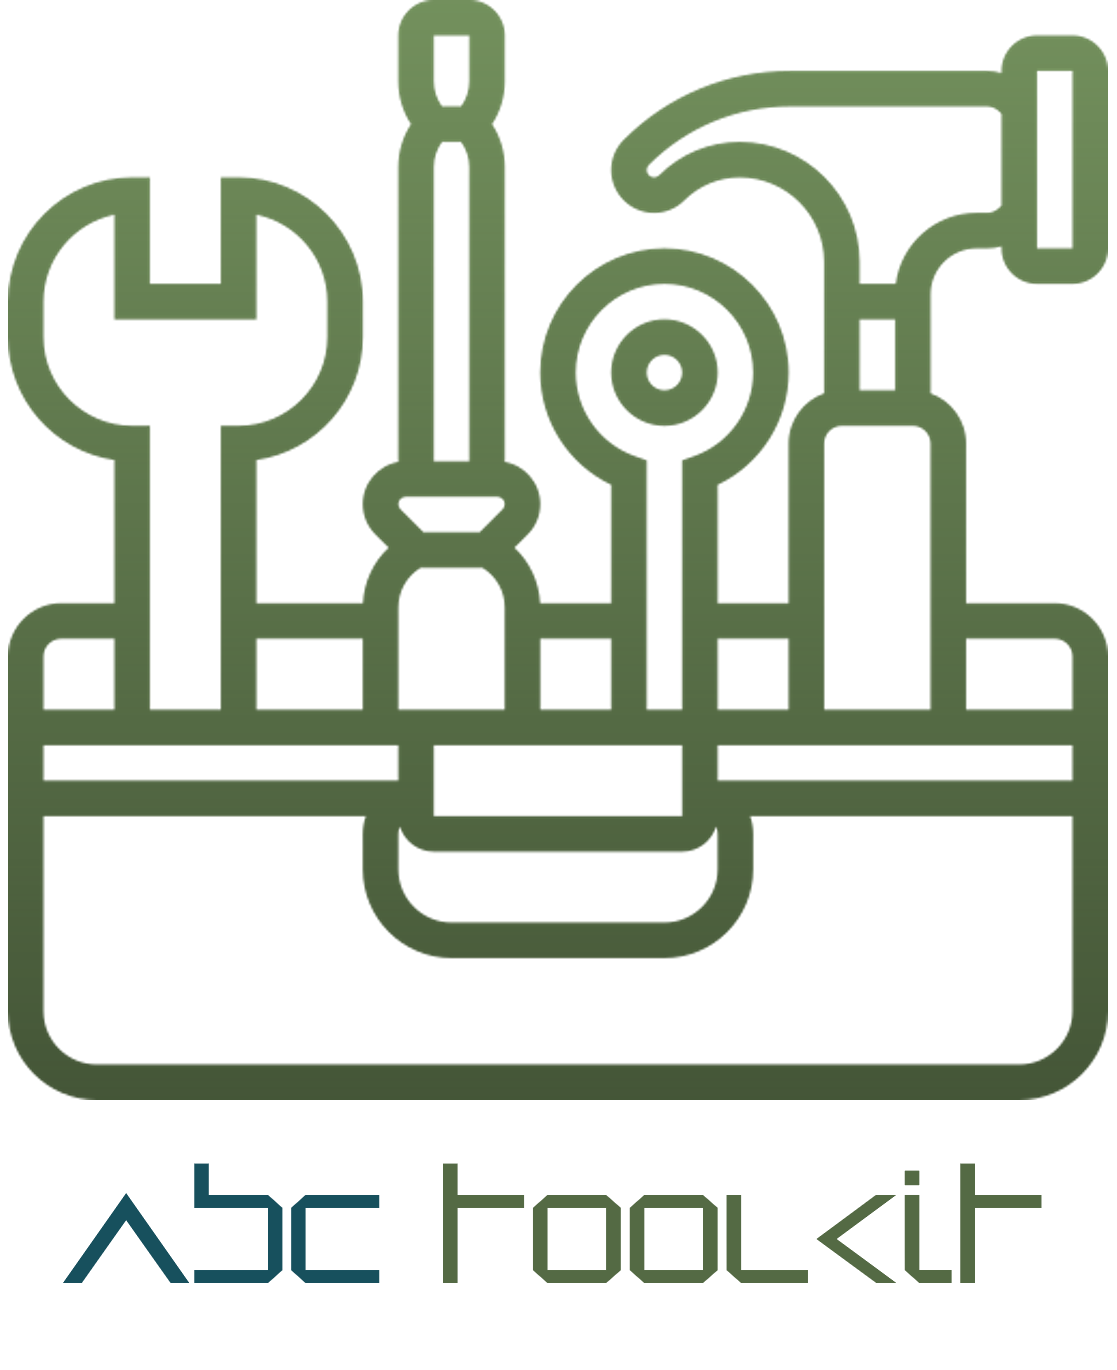 iba abc toolkit logo